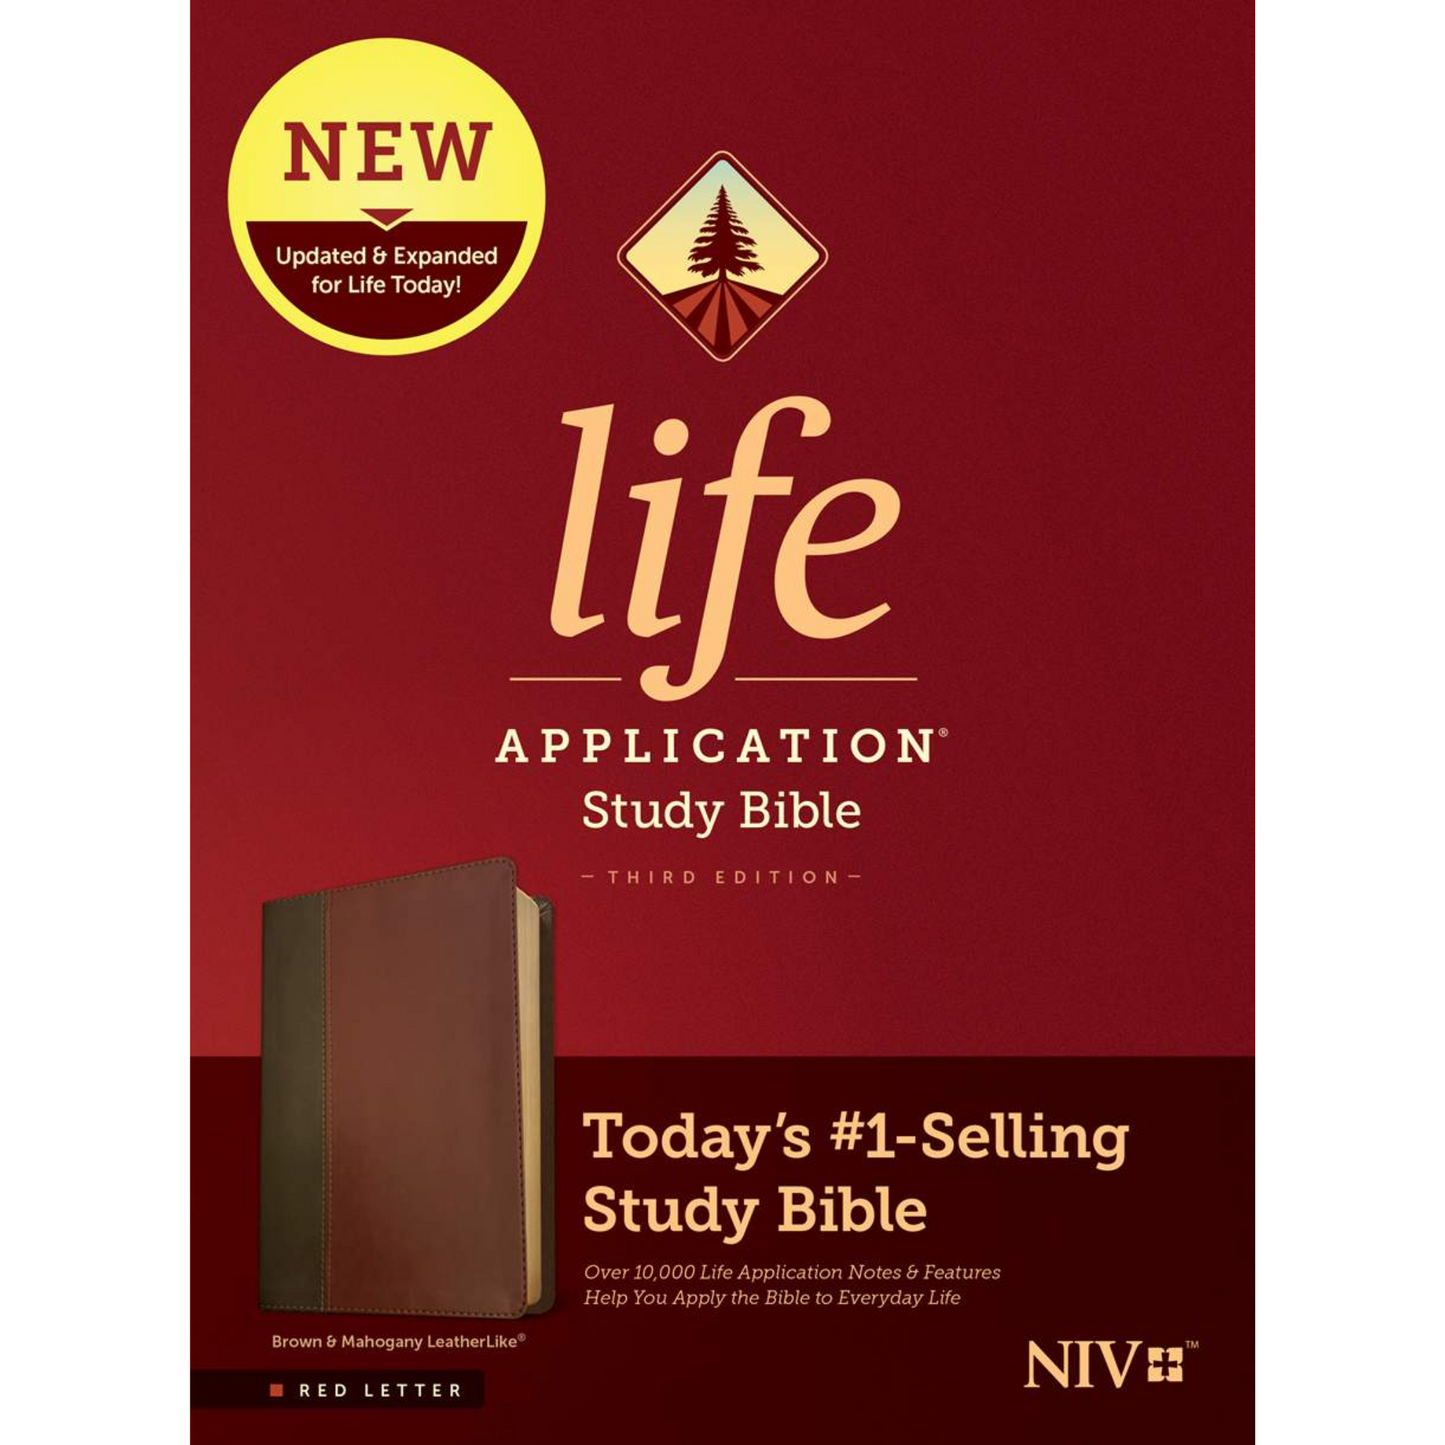 NIV Life Application Study Bible (Third Ed) - Brown/Mahogany